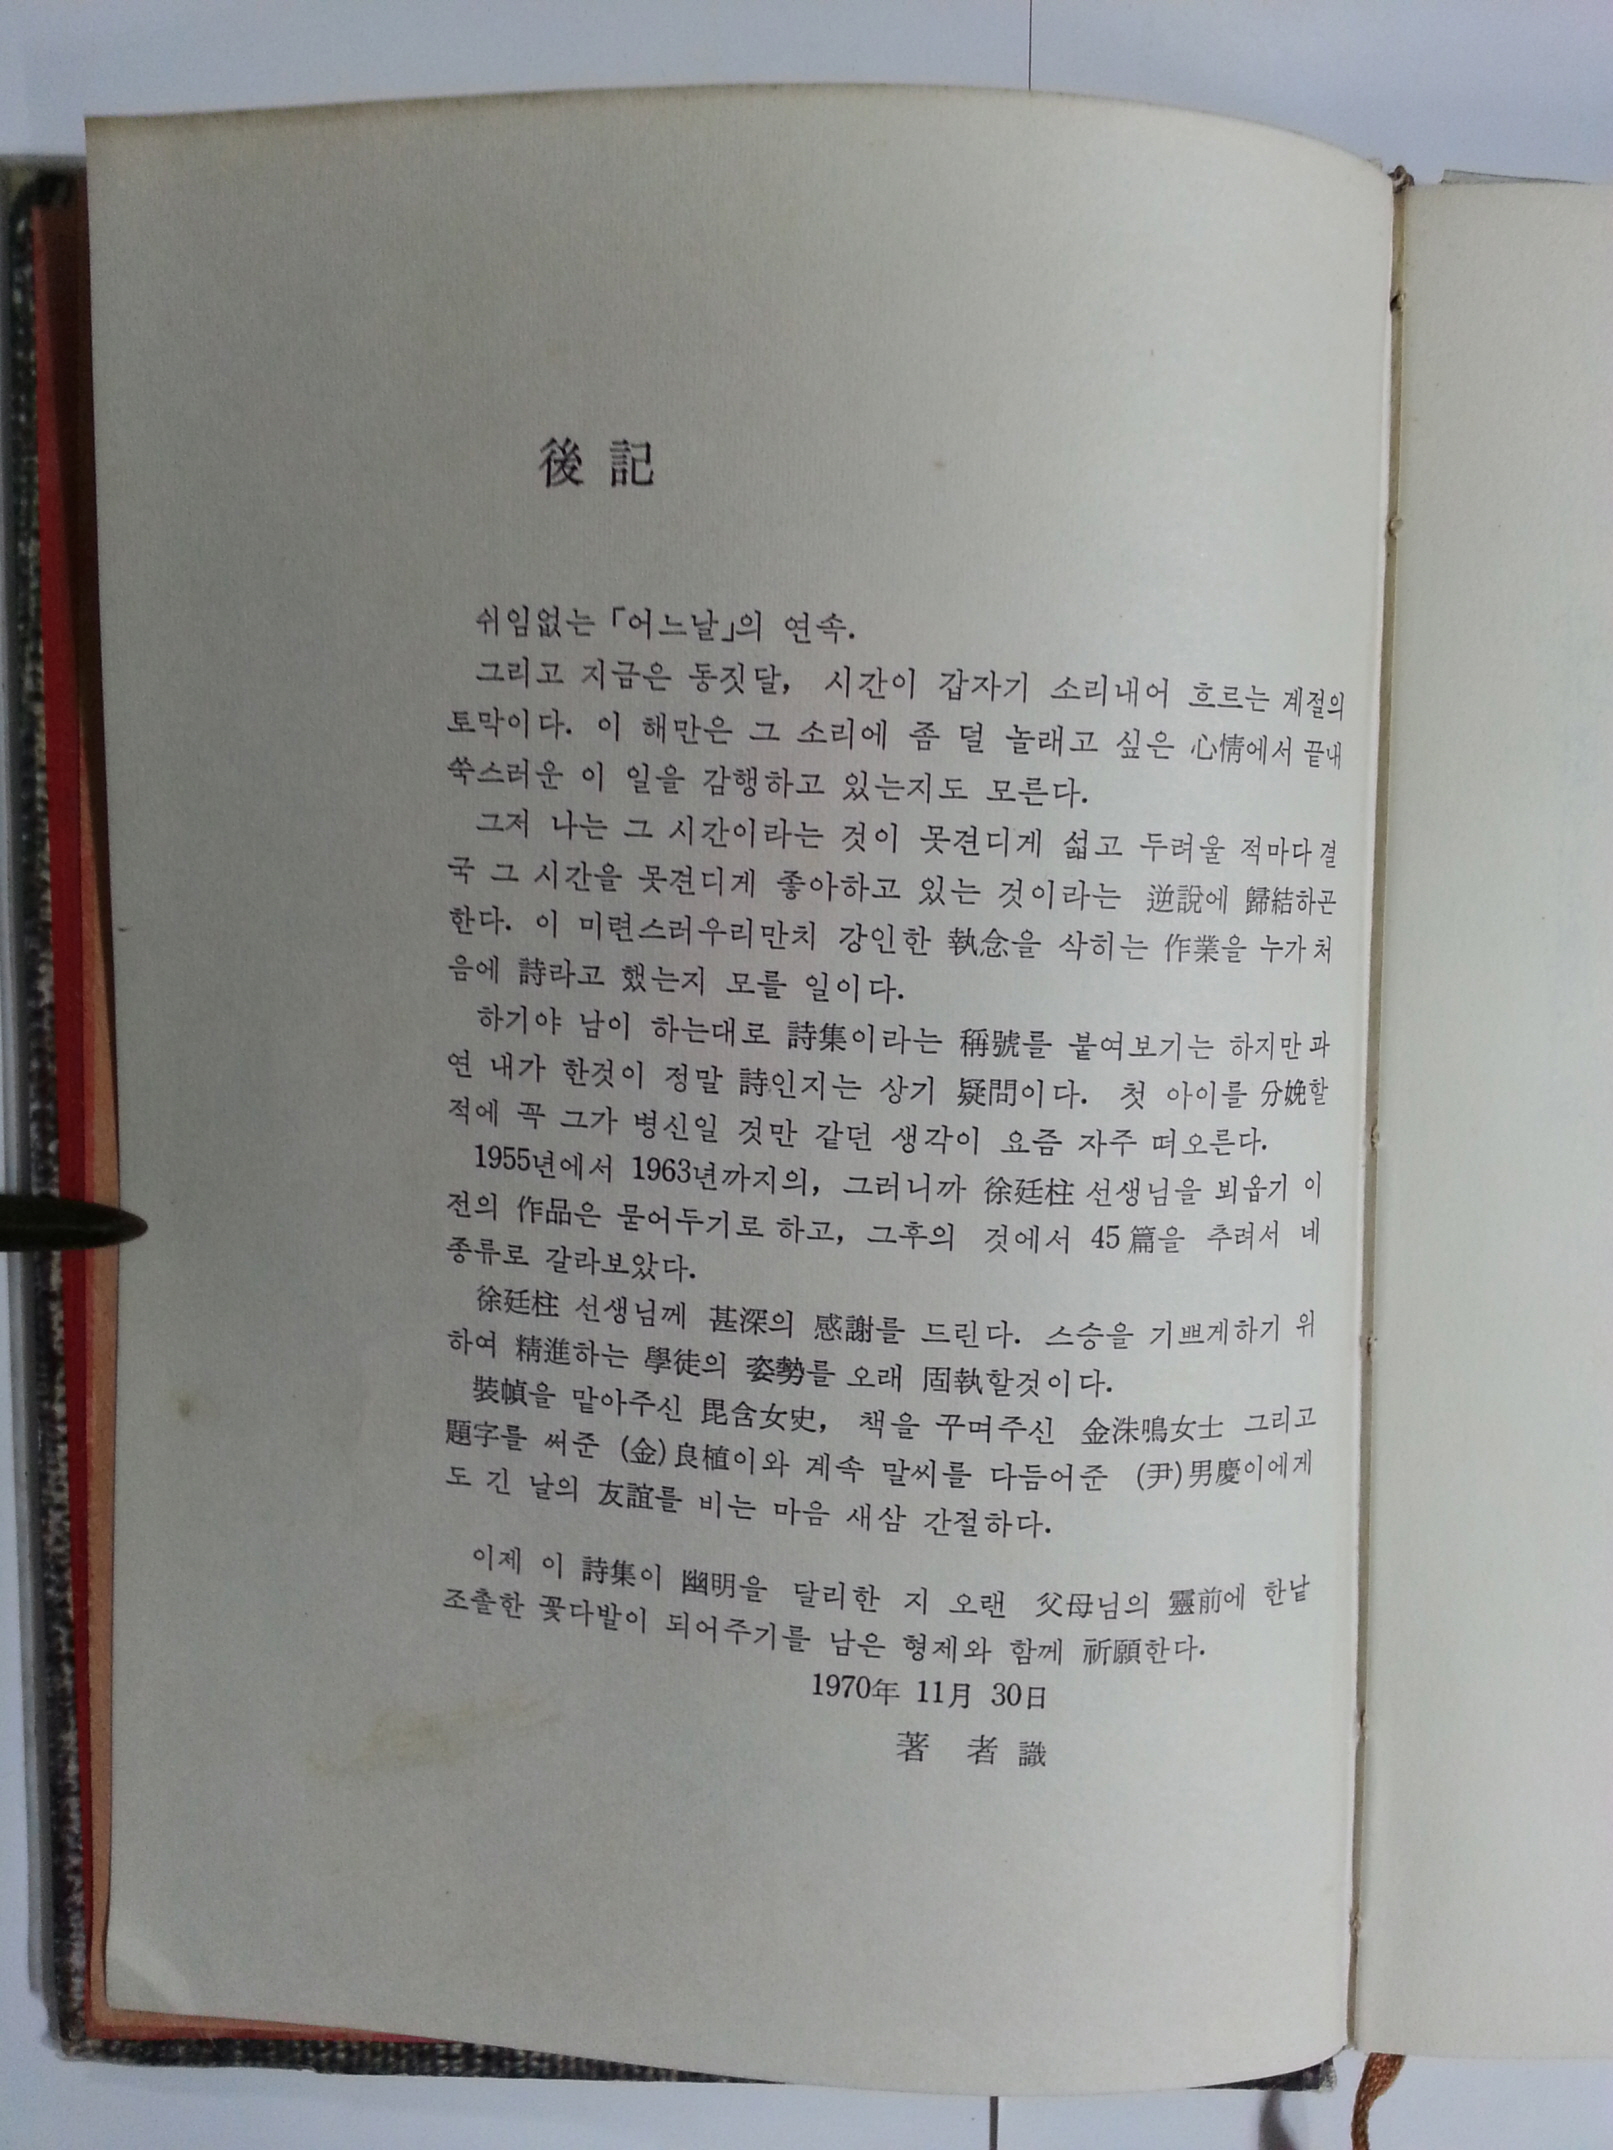 어느 날 (신동춘 제1시집, 1970년 판권지낙장, 저자증정본)